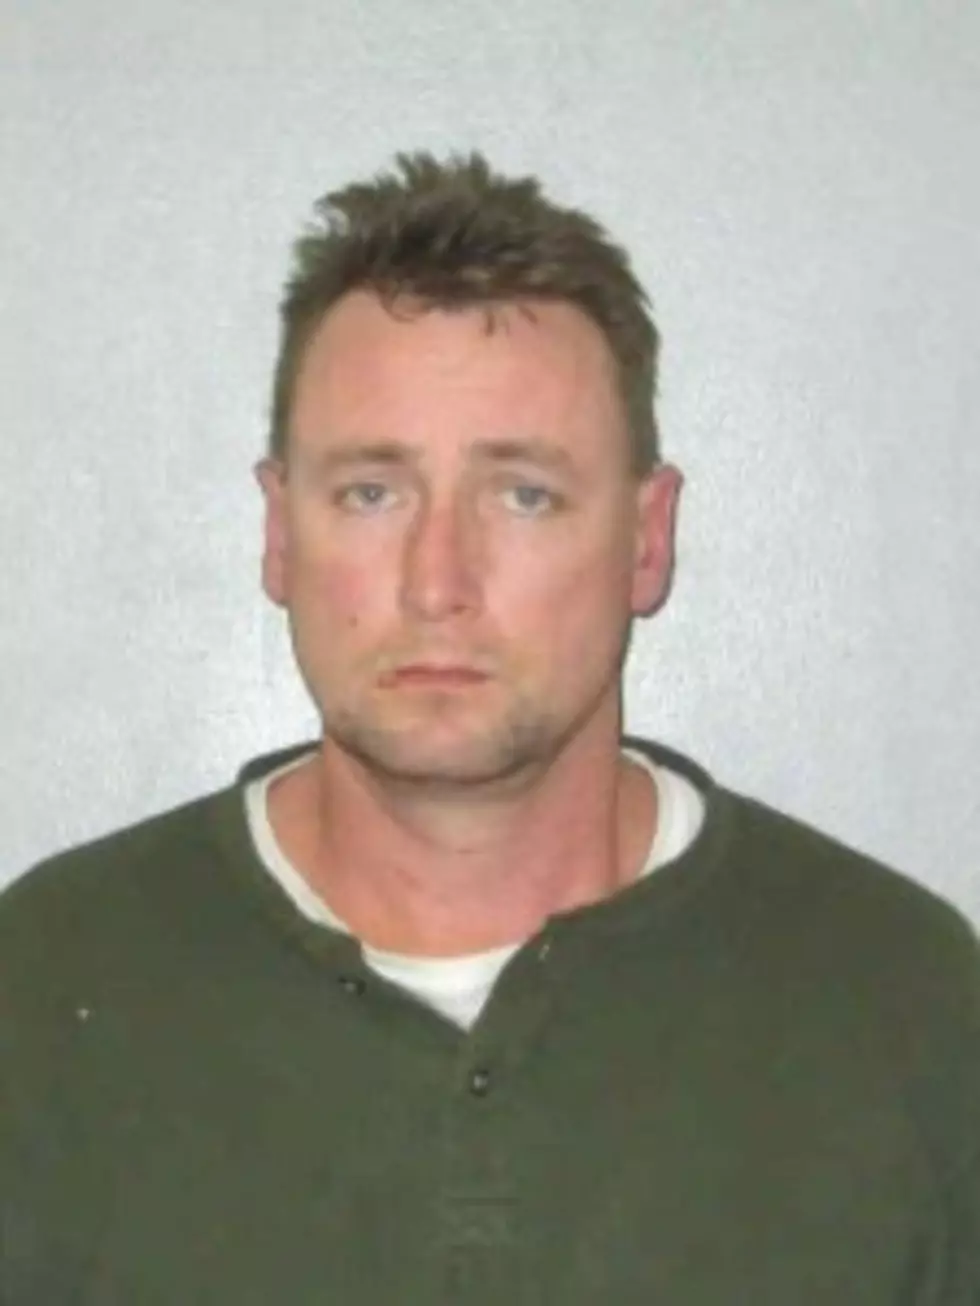 Wanted NE Iowa Man, Turns Self In to Authorities